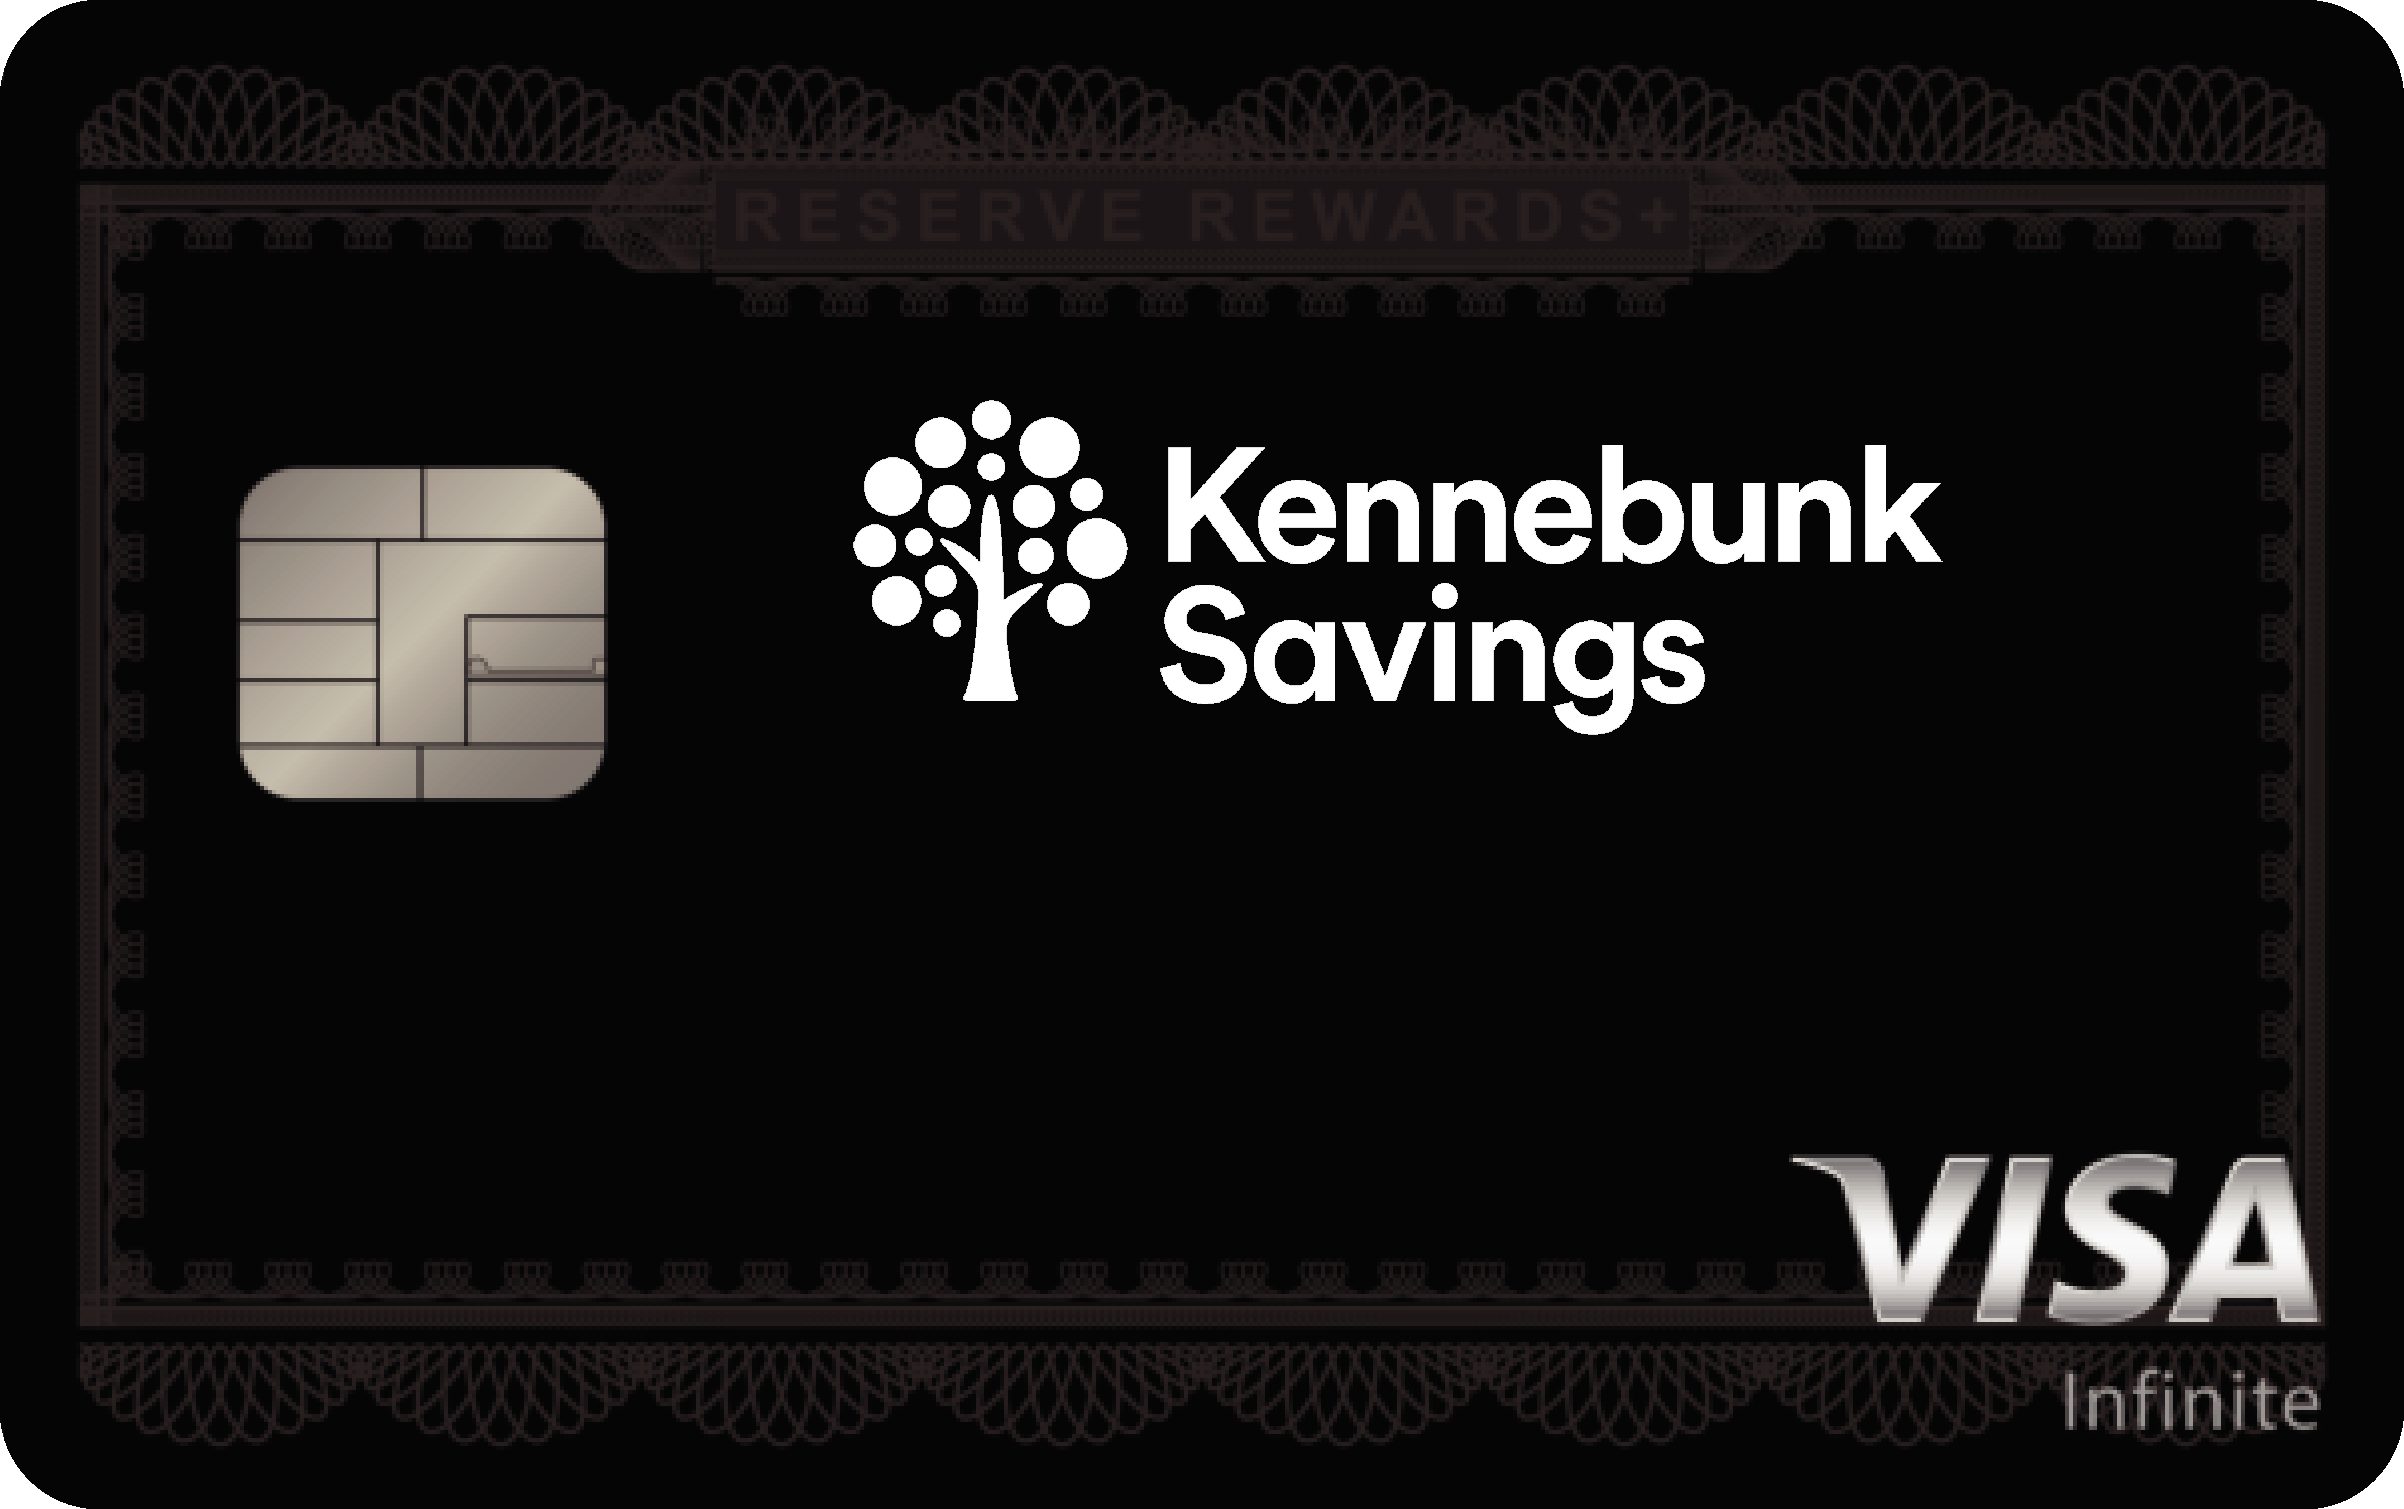 Kennebunk Savings Reserve Rewards+ Card